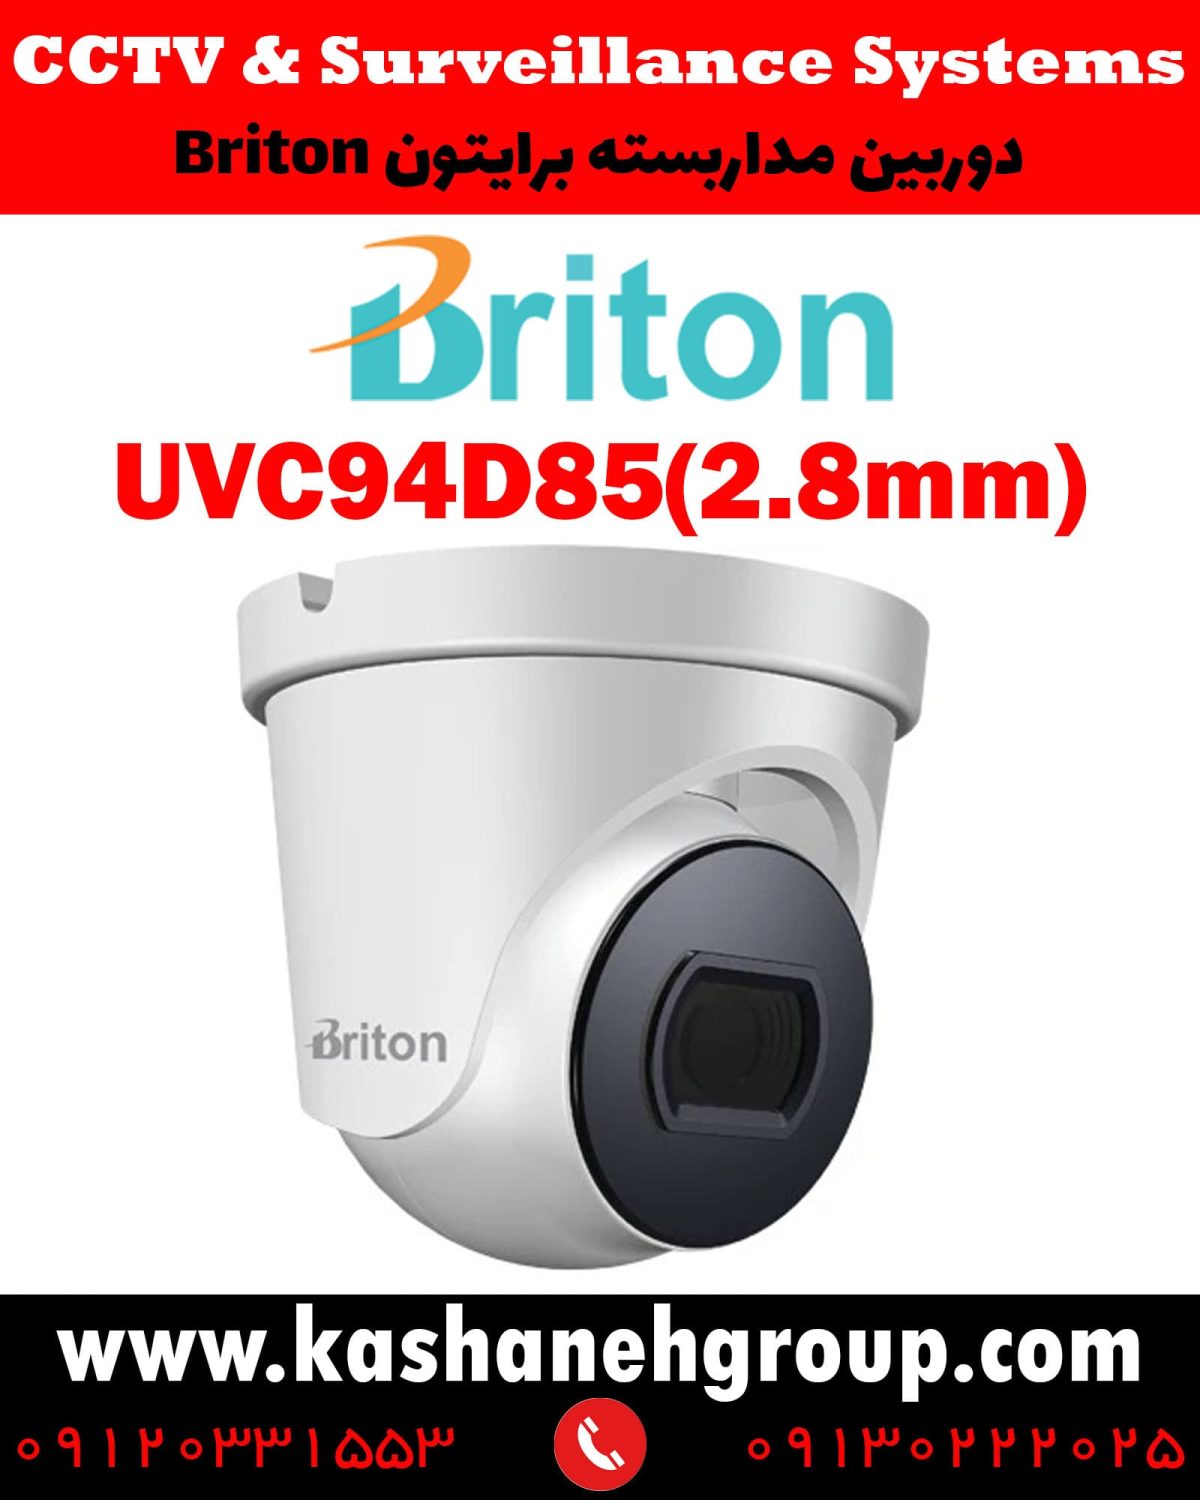 دوربین مداربسته UVC94D85(2.8MM)، دوربین مداربسته برایتون UVC94D85(2.8MM)، دوربین مداربسته Briton UVC94D85(2.8MM)، دوربین برایتون UVC94D85(2.8MM)، قیمت دوربین برایتون، نرم افزار برایتون، تعمیر دوربین برایتون، نمایندگی برایتون، نماینده برایتون، قیمت دوربین برایتون، مشخصات دوربین UVC94D85(2.8MM)، قیمت دوربین برایتون UVC94D85(2.8MM)، قیمت دوربین UVC94D85(2.8MM) برایتون، پک دوربین برایتون، پک دوربین مداربسته برایتون، دوربین Briton، دوربین مداربسته برایتون Briton UVC94D85(2.8MM) ، نماینده دوربین Briton، نمایندگی دوربین Briton، نرم افزار موبایل دوربین مداربسته Briton، دوربین مداربسته، قیمت دوربین مداربسته، دوربین مدار بسته، خرید دوربین مداربسته، کابل دوربین مداربسته، پک دوربین مداربسته، دوربین مداربسته سیم کارت خور، دوربین مداربسته لامپی، آداپتور دوربین مداربسته، دوربین مداربسته شیائومی، بهترین مارک دوربین مداربسته، بهترین نرم افزار انتقال تصویر دوربین مداربسته روی موبایل، بهترین مارک دوربین مداربسته، دوربین برایتون، دوربین مداربسته در اصفهان، قیمت دوربین مداربسته در اصفهان، نماینده برایتون در اصفهان، نماینده دوربین برایتون اصفهان، نصب دوربین مداربسته در اصفهان، تعمیر دوربین مداربسته در اصفهان، شرکت دوربین در اصفهان